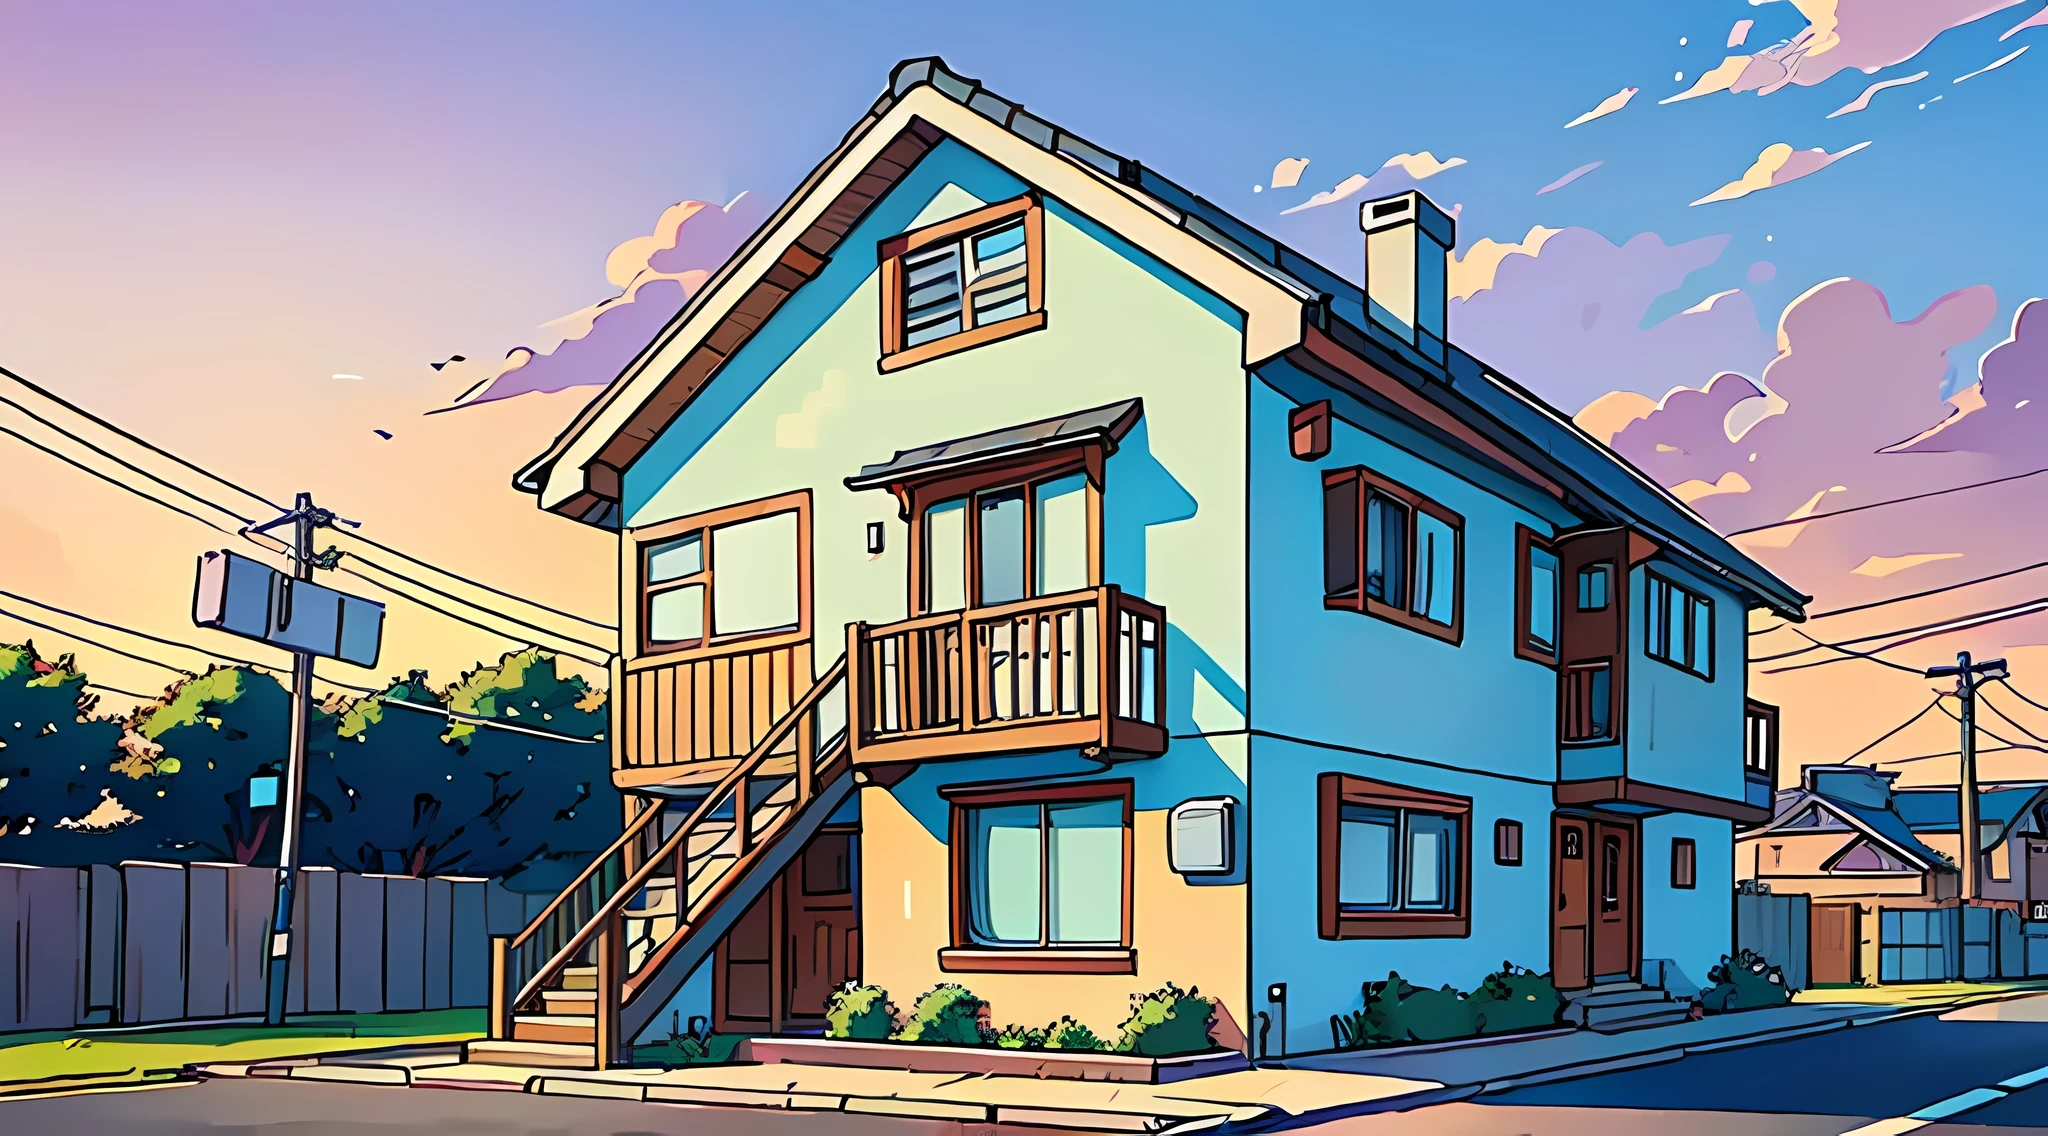 (melhor qualidade:0.8), (melhor qualidade:0.8), (((sem humanos))), ilustração de anime perfeita introspectiva quebrada, vista frontal, uma casa com uma pequena caixa de correio na frente